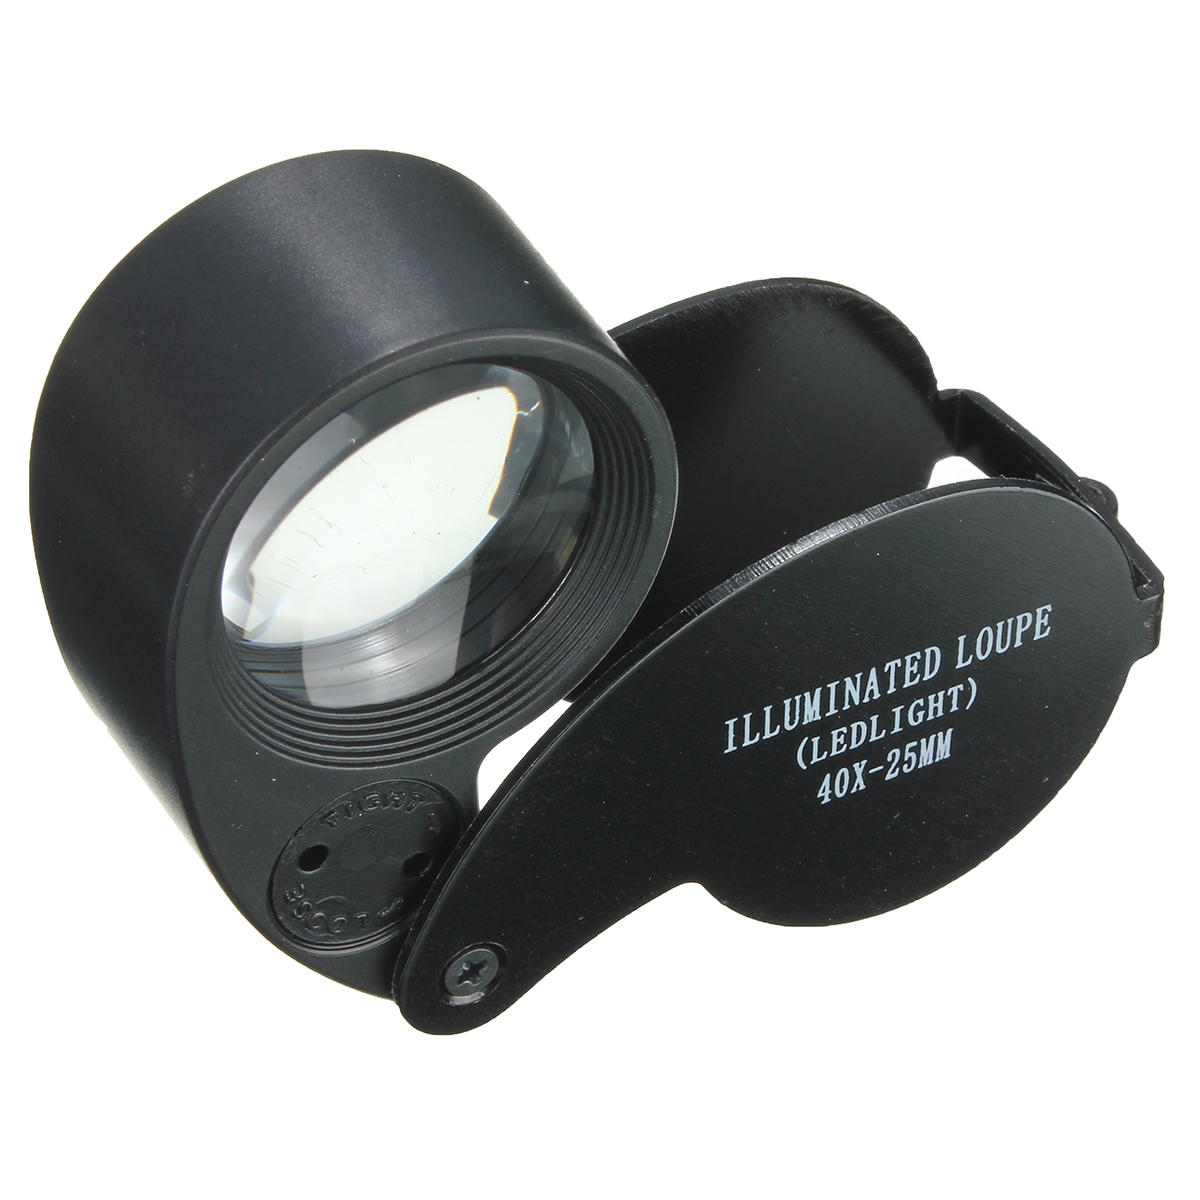 

Глаз часы лупа стекло LED свет ювелирные изделия лупа объектив 40 х 25 мм